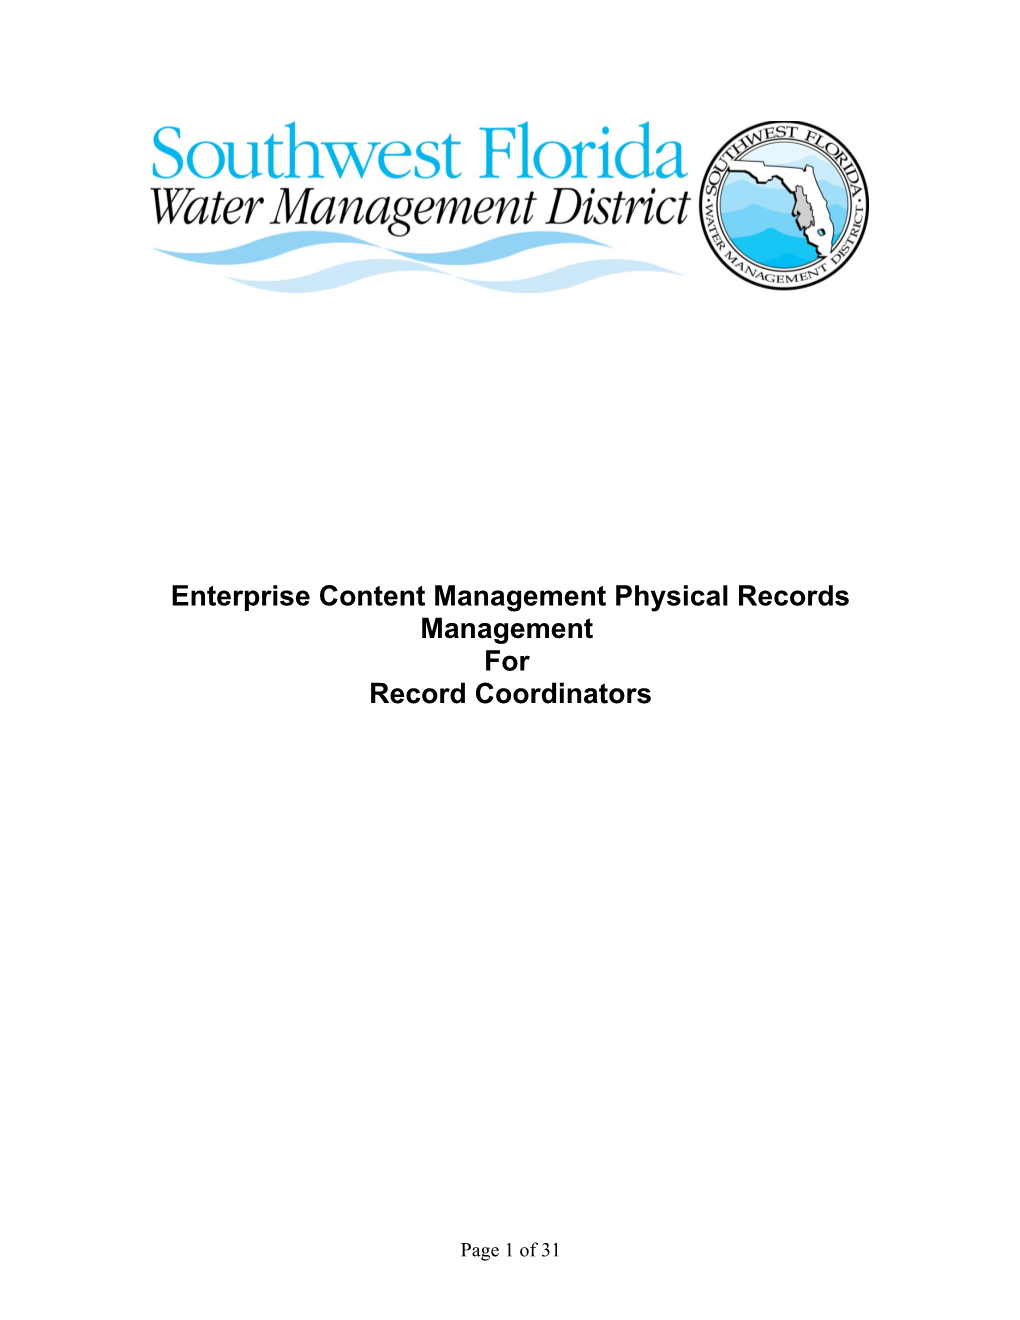 Enterprise Content Management Physical Records Management